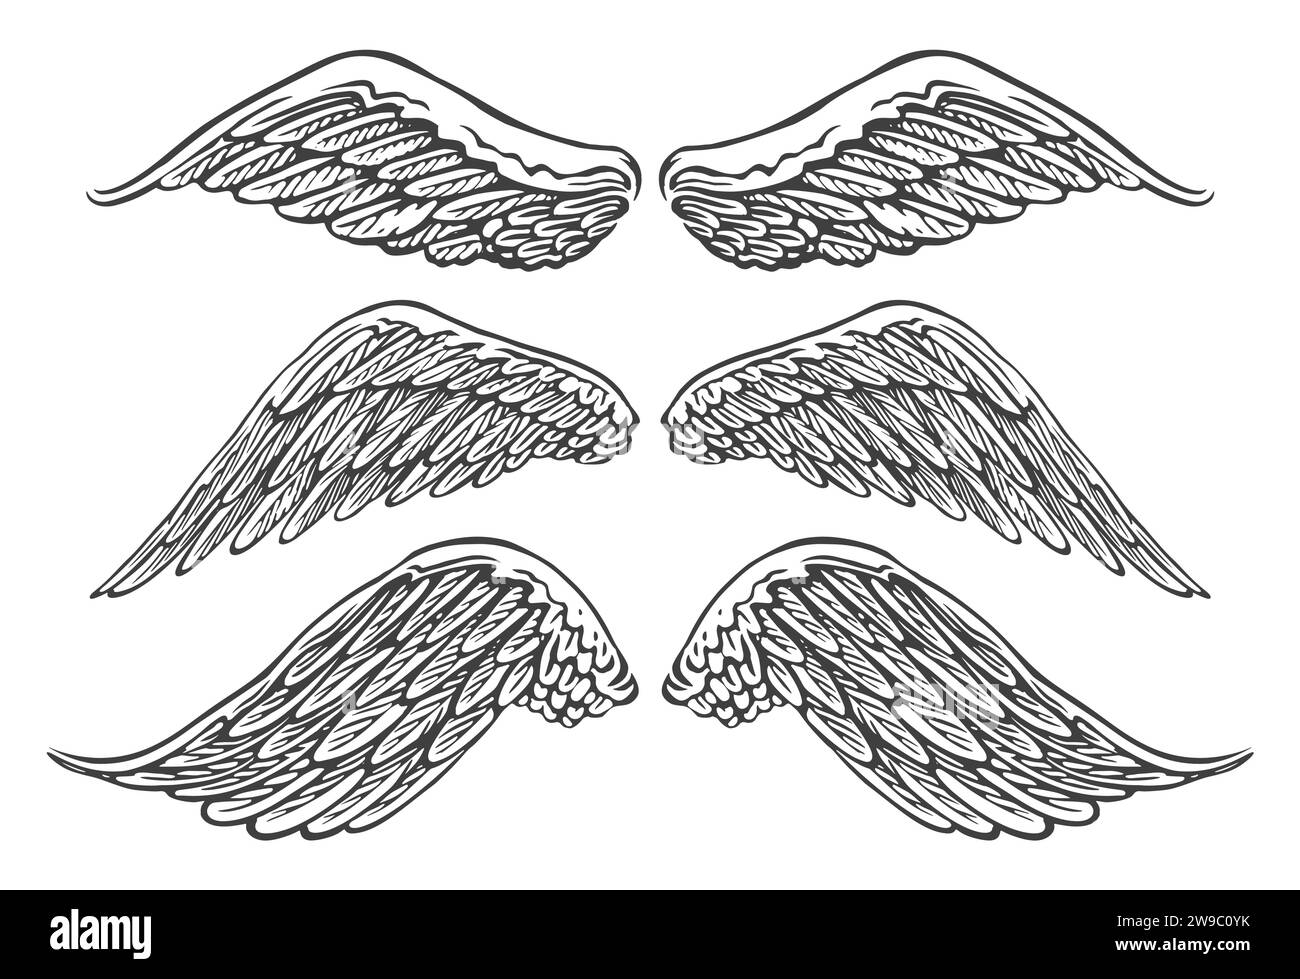 Ailes d'oiseaux ou d'anges de formes diverses en position ouverte. Illustration vectorielle vintage dessinée à la main Illustration de Vecteur